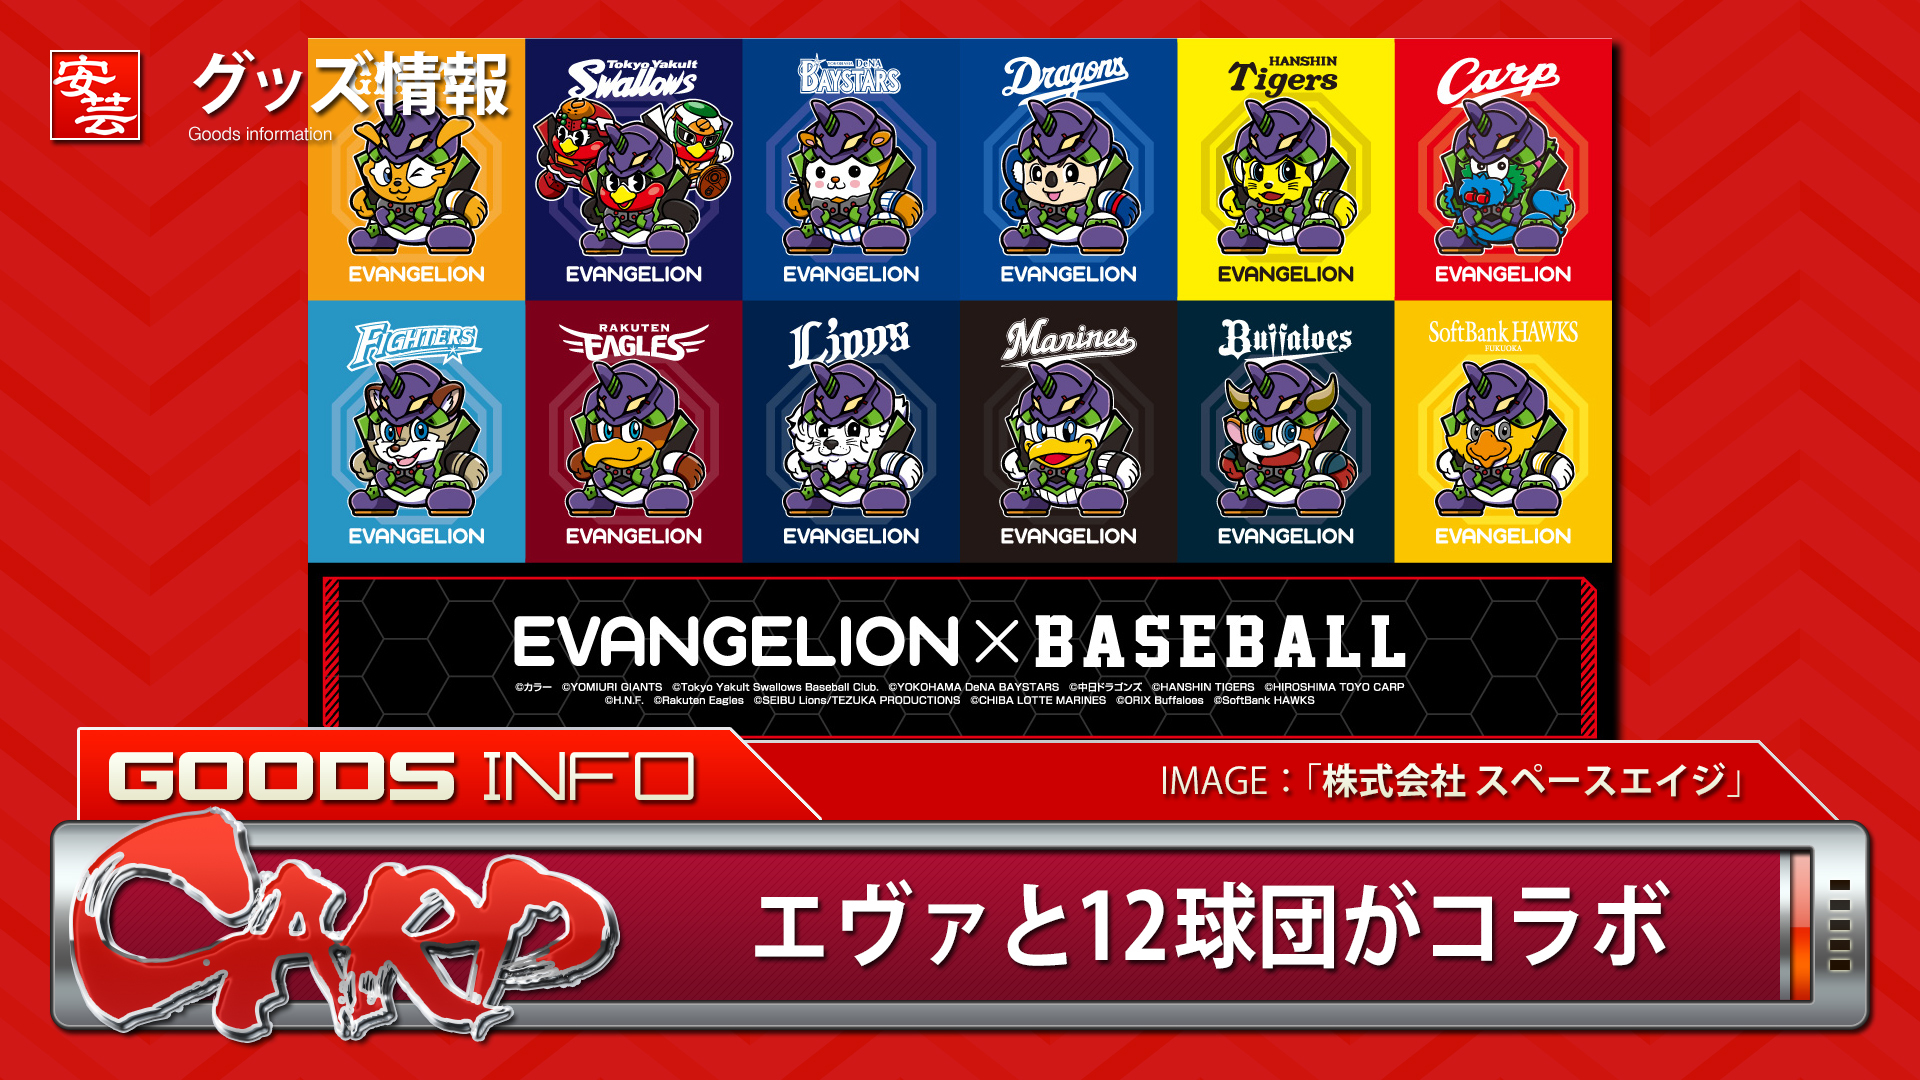 エヴァンゲリオン とプロ野球12球団がコラボ 安芸の者がゆく 広島東洋カープ応援ブログ